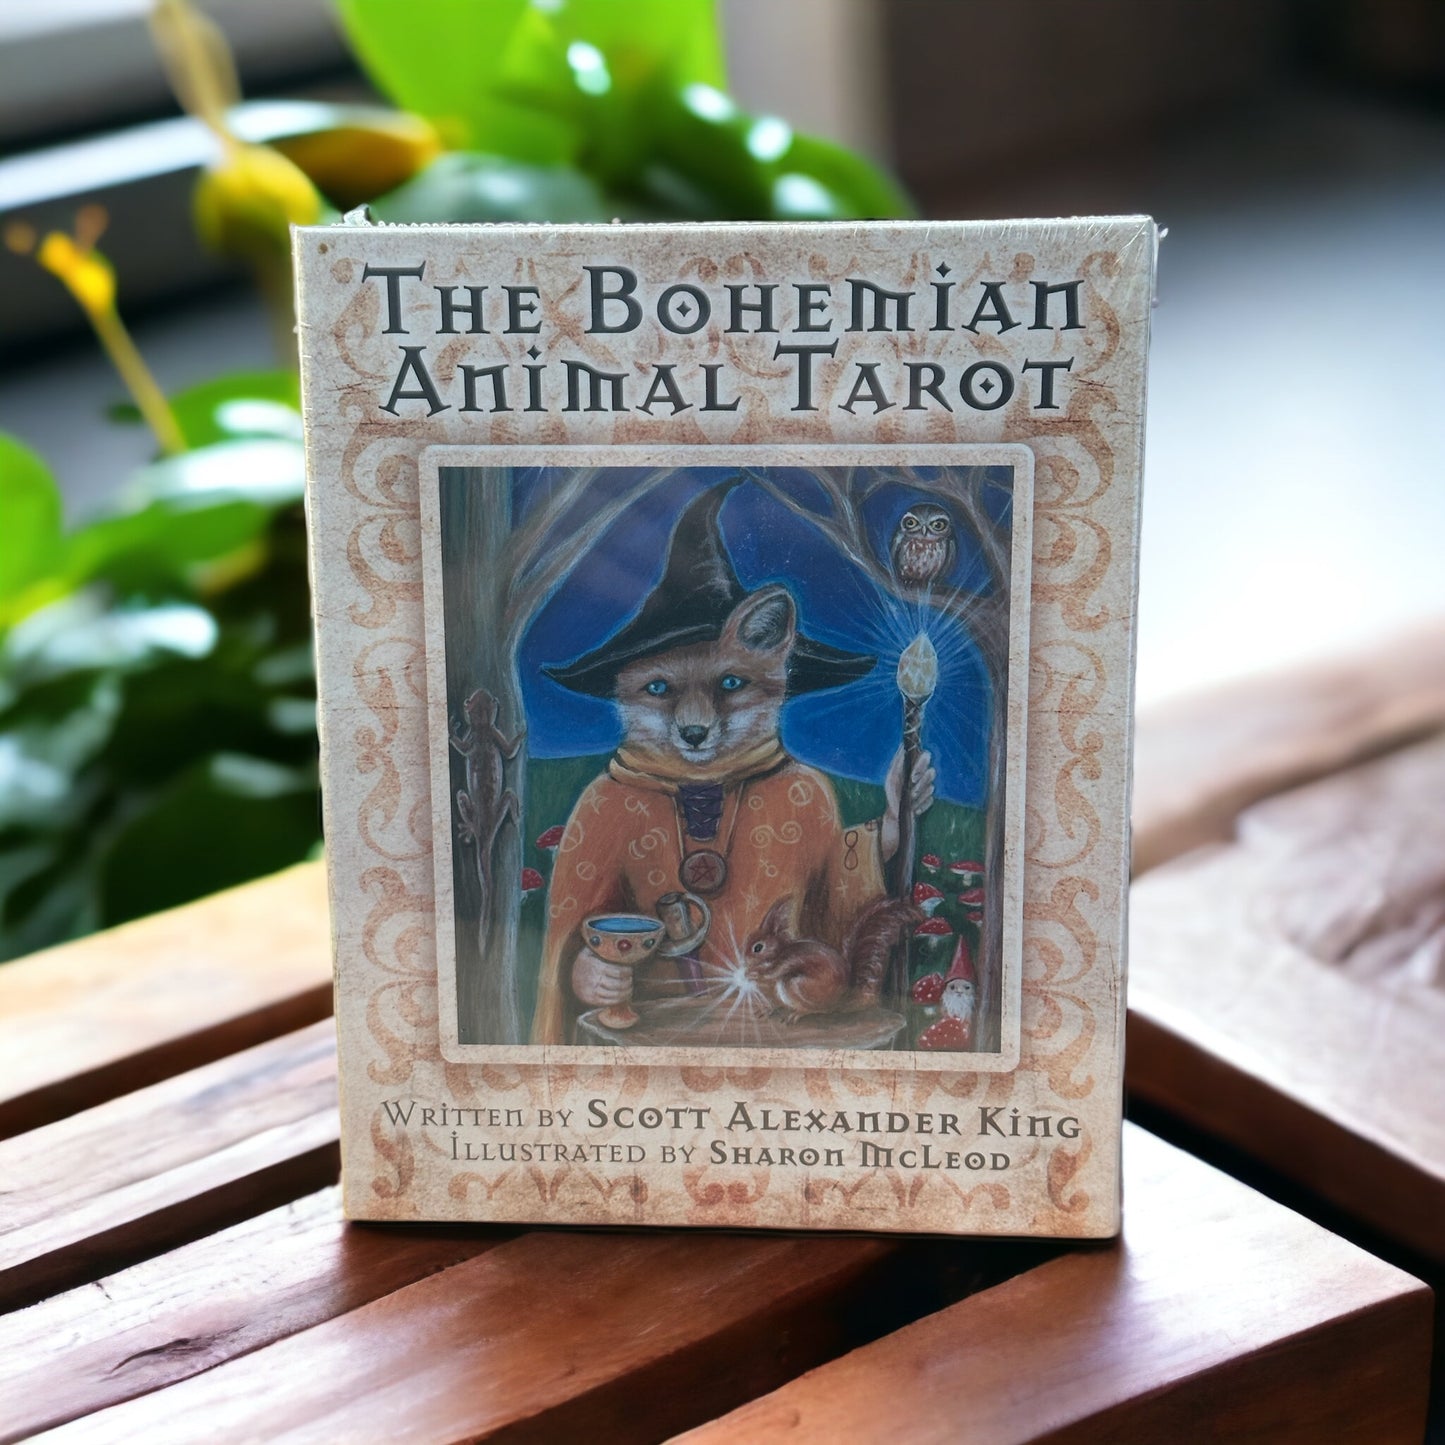 The Bohemian Animal Tarot